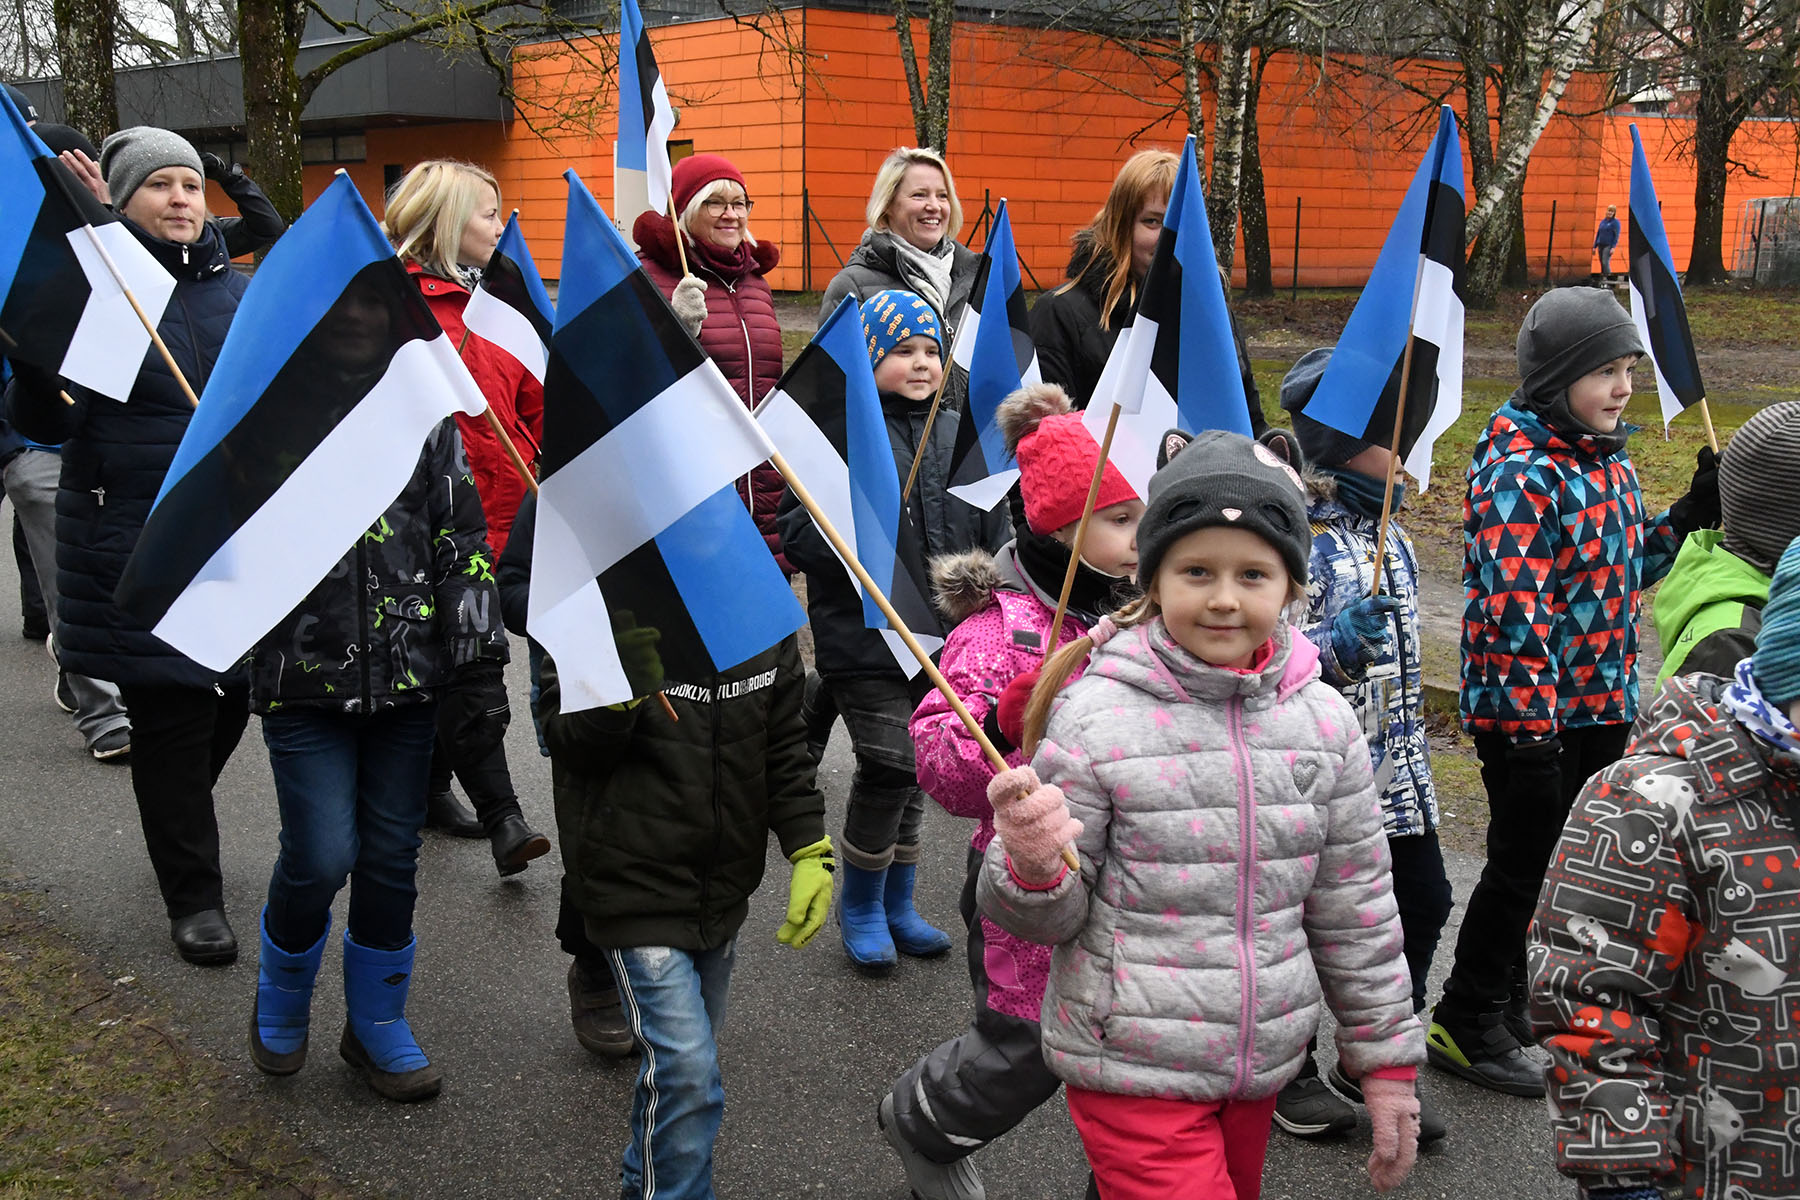 Sindi lasteaed on jõudnud lippudega jalutades Kooli tänavale. Foto Urmas Saard